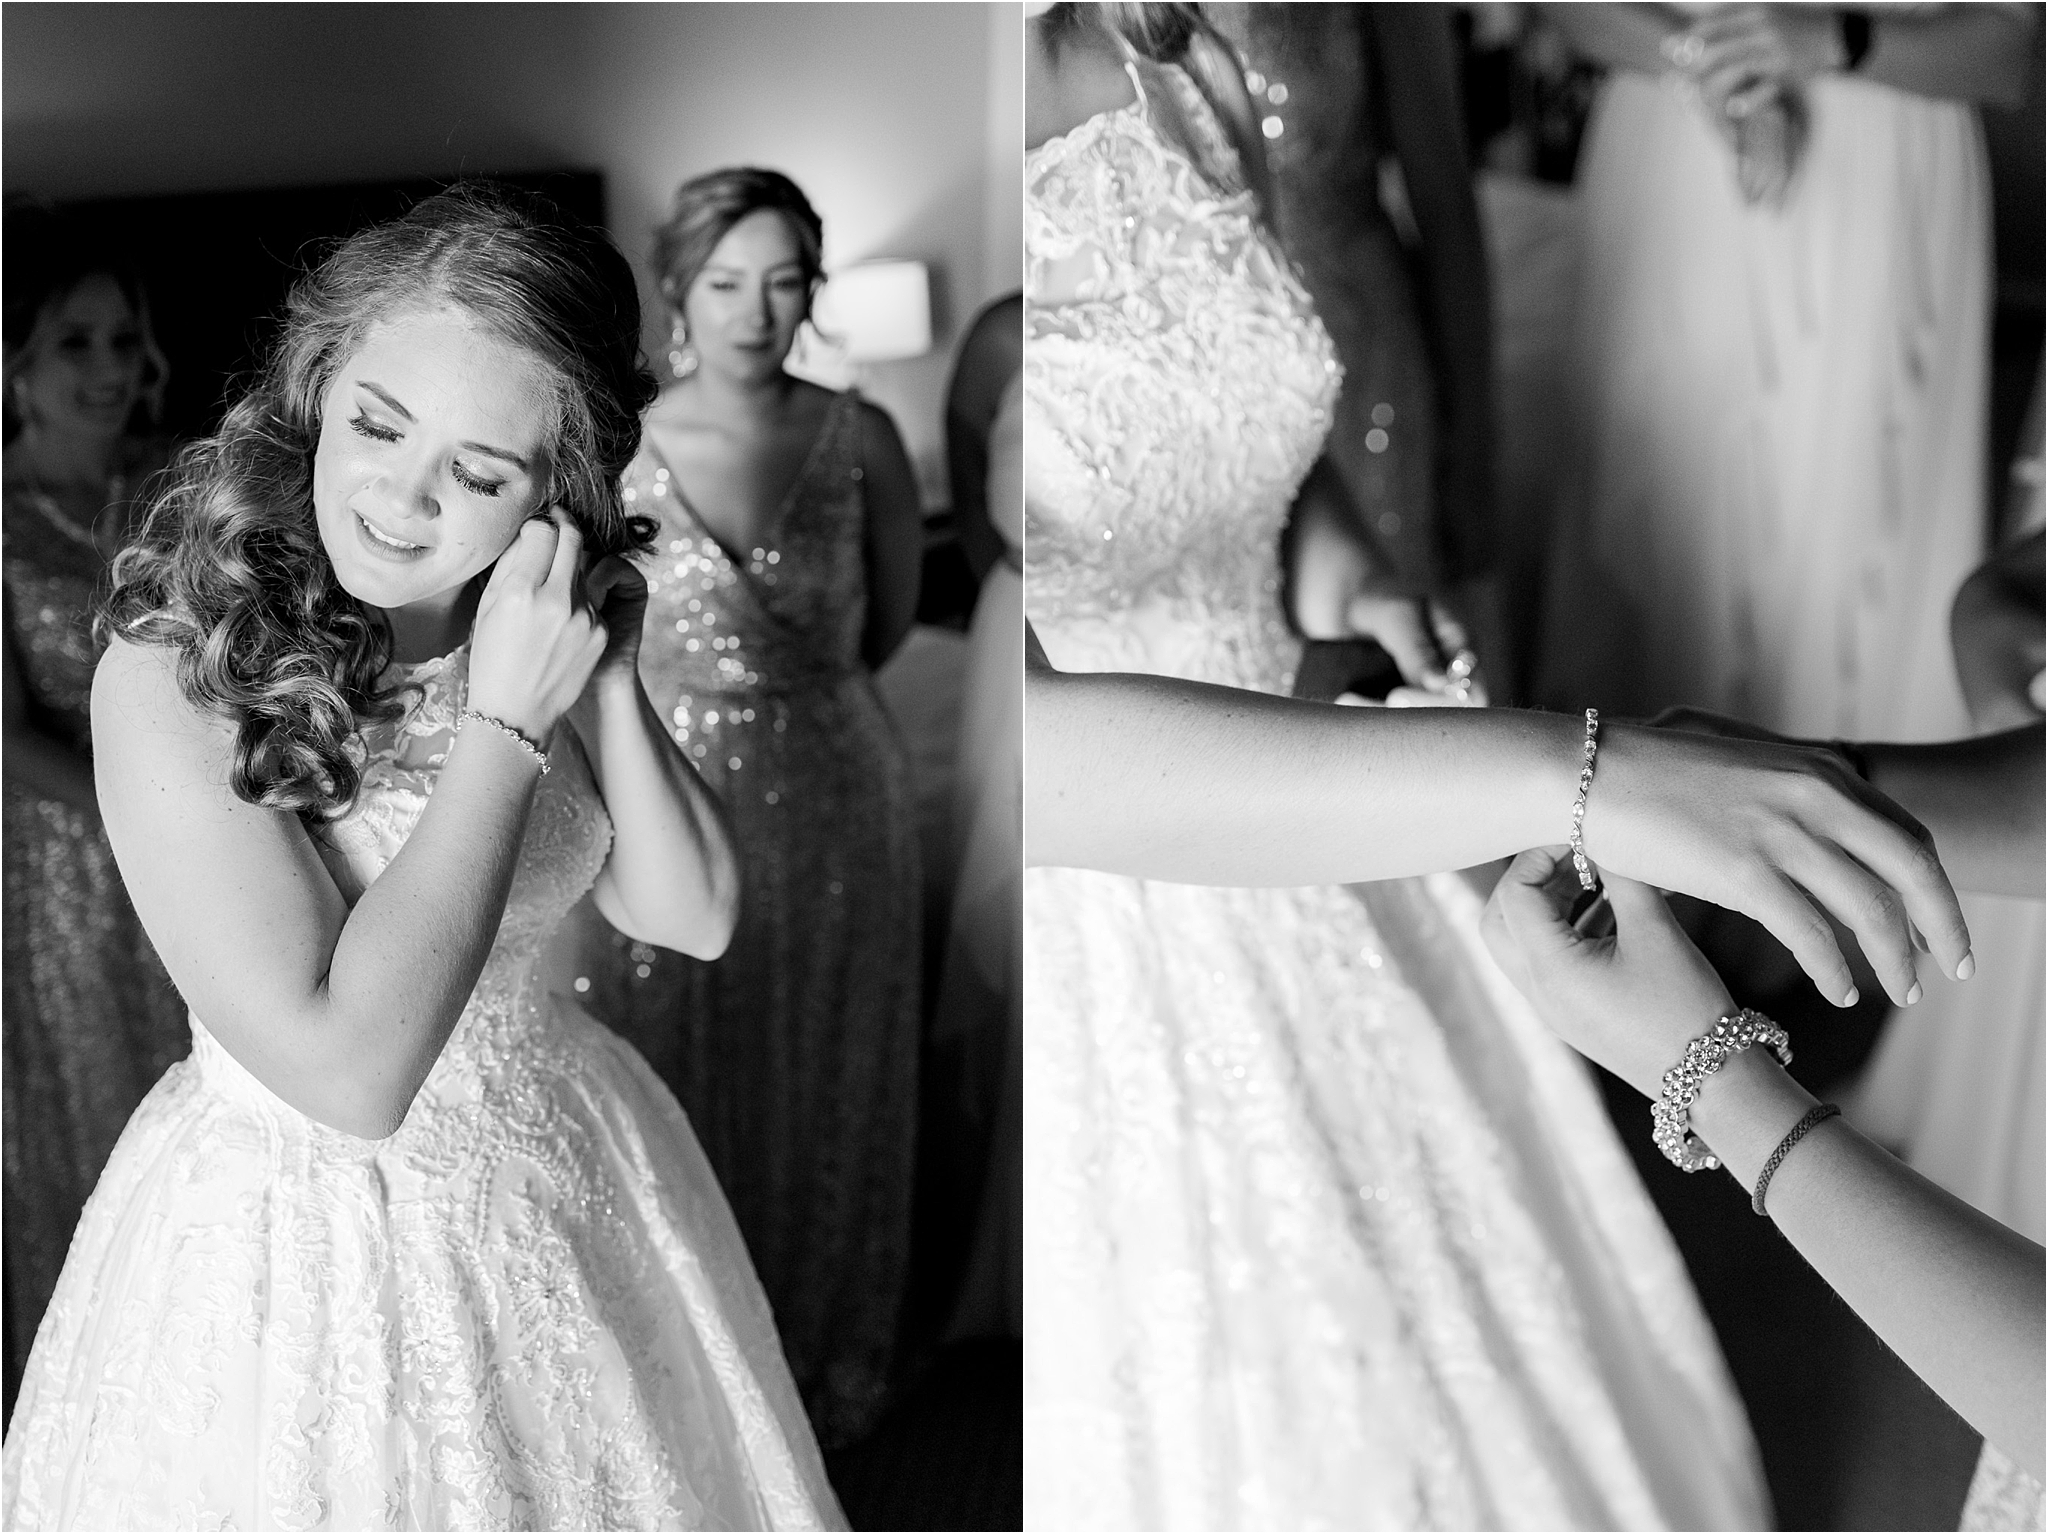 Omni Wedding Photographer | Tucson AZ | Ligia and Arturo getting ready photos | Tucson Wedding Photographer | West End Photography